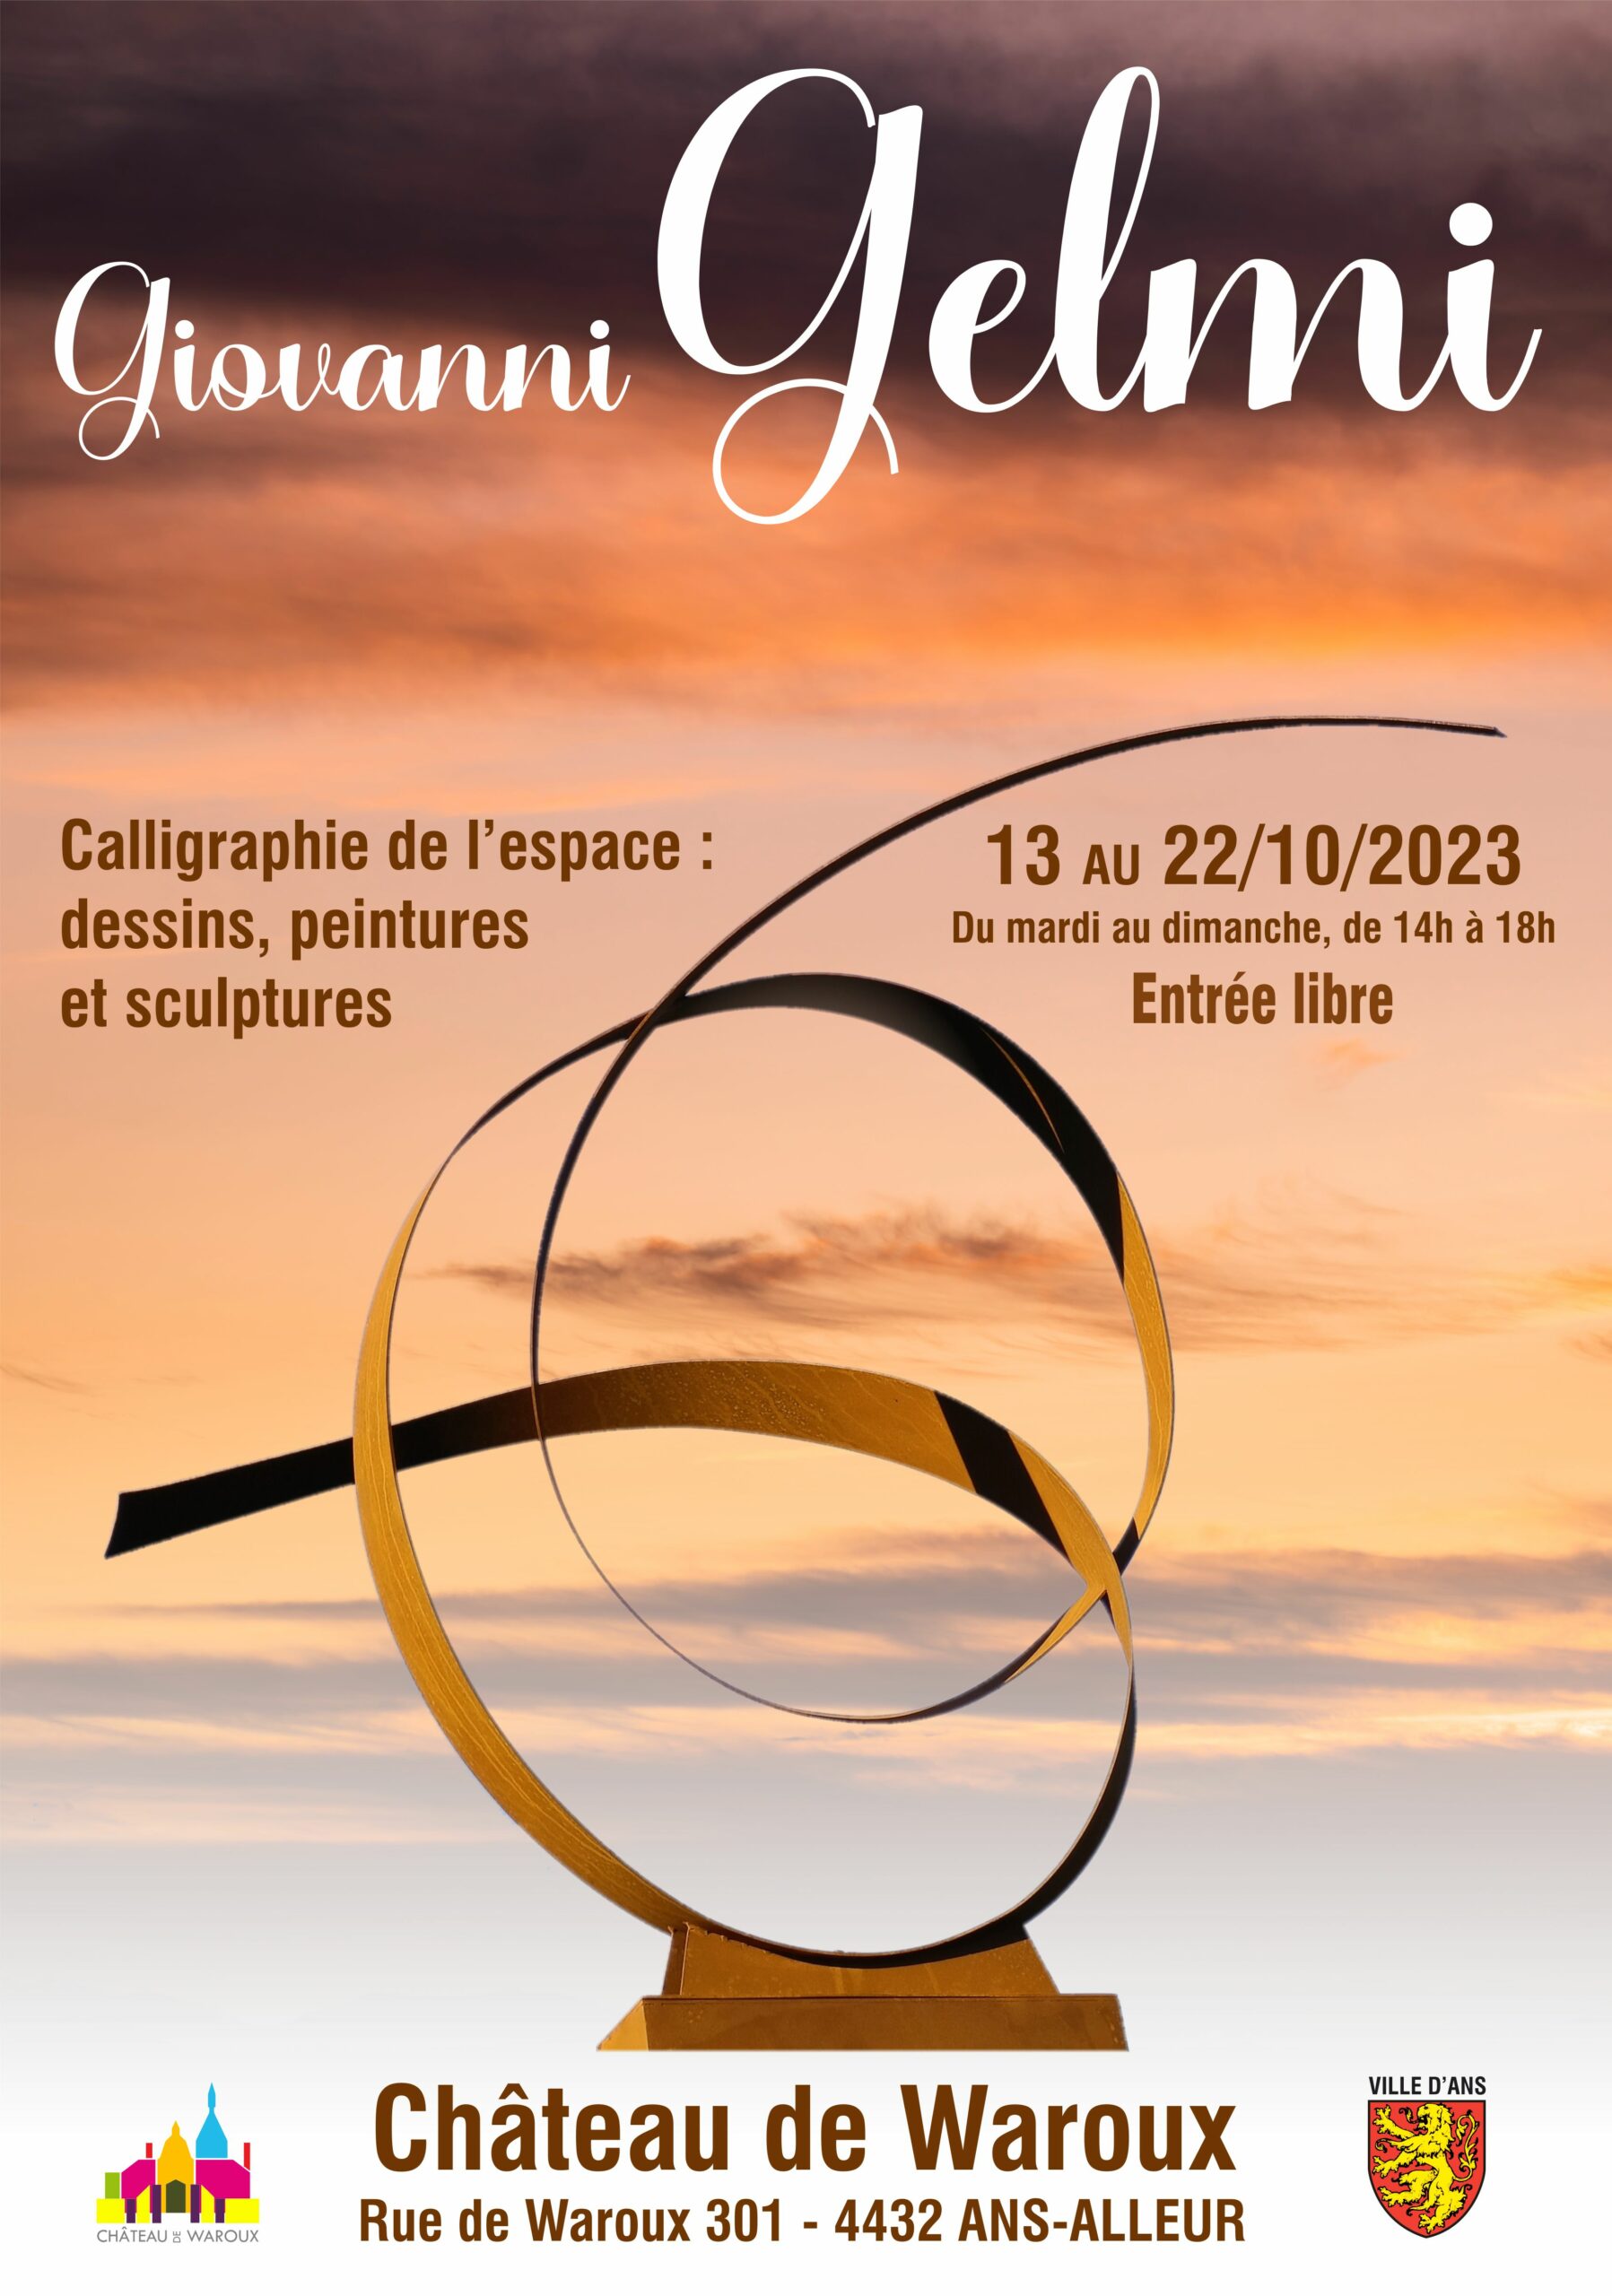 Exposition de Giovanni Gelmi au Château de Waroux à ANS du 13 au 22 Octobre 2023